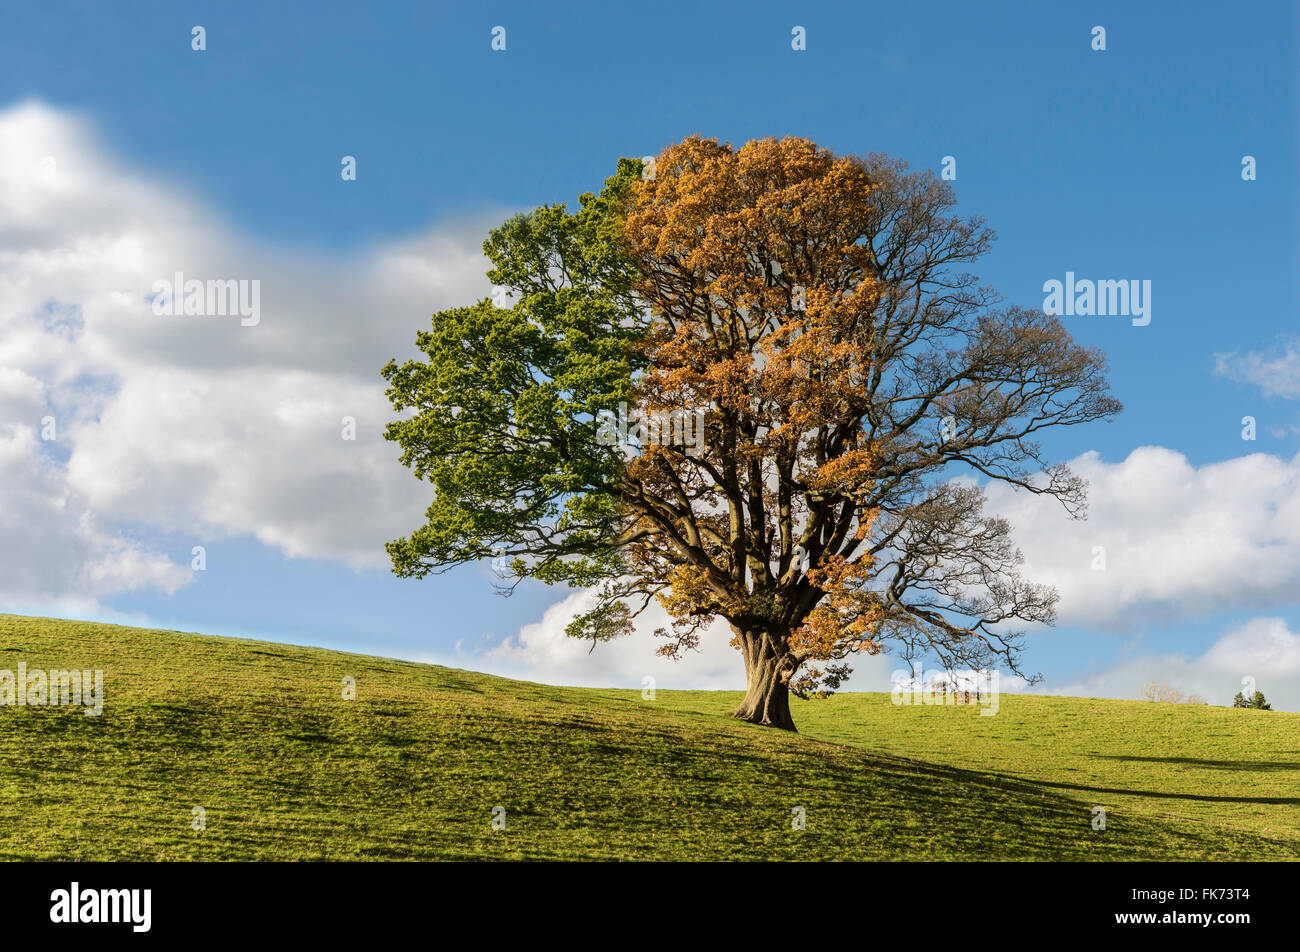 Montage d'arbre de chêne par trois saisons, été, automne, printemps montrant passage du temps. Tree in field. Uk Banque D'Images